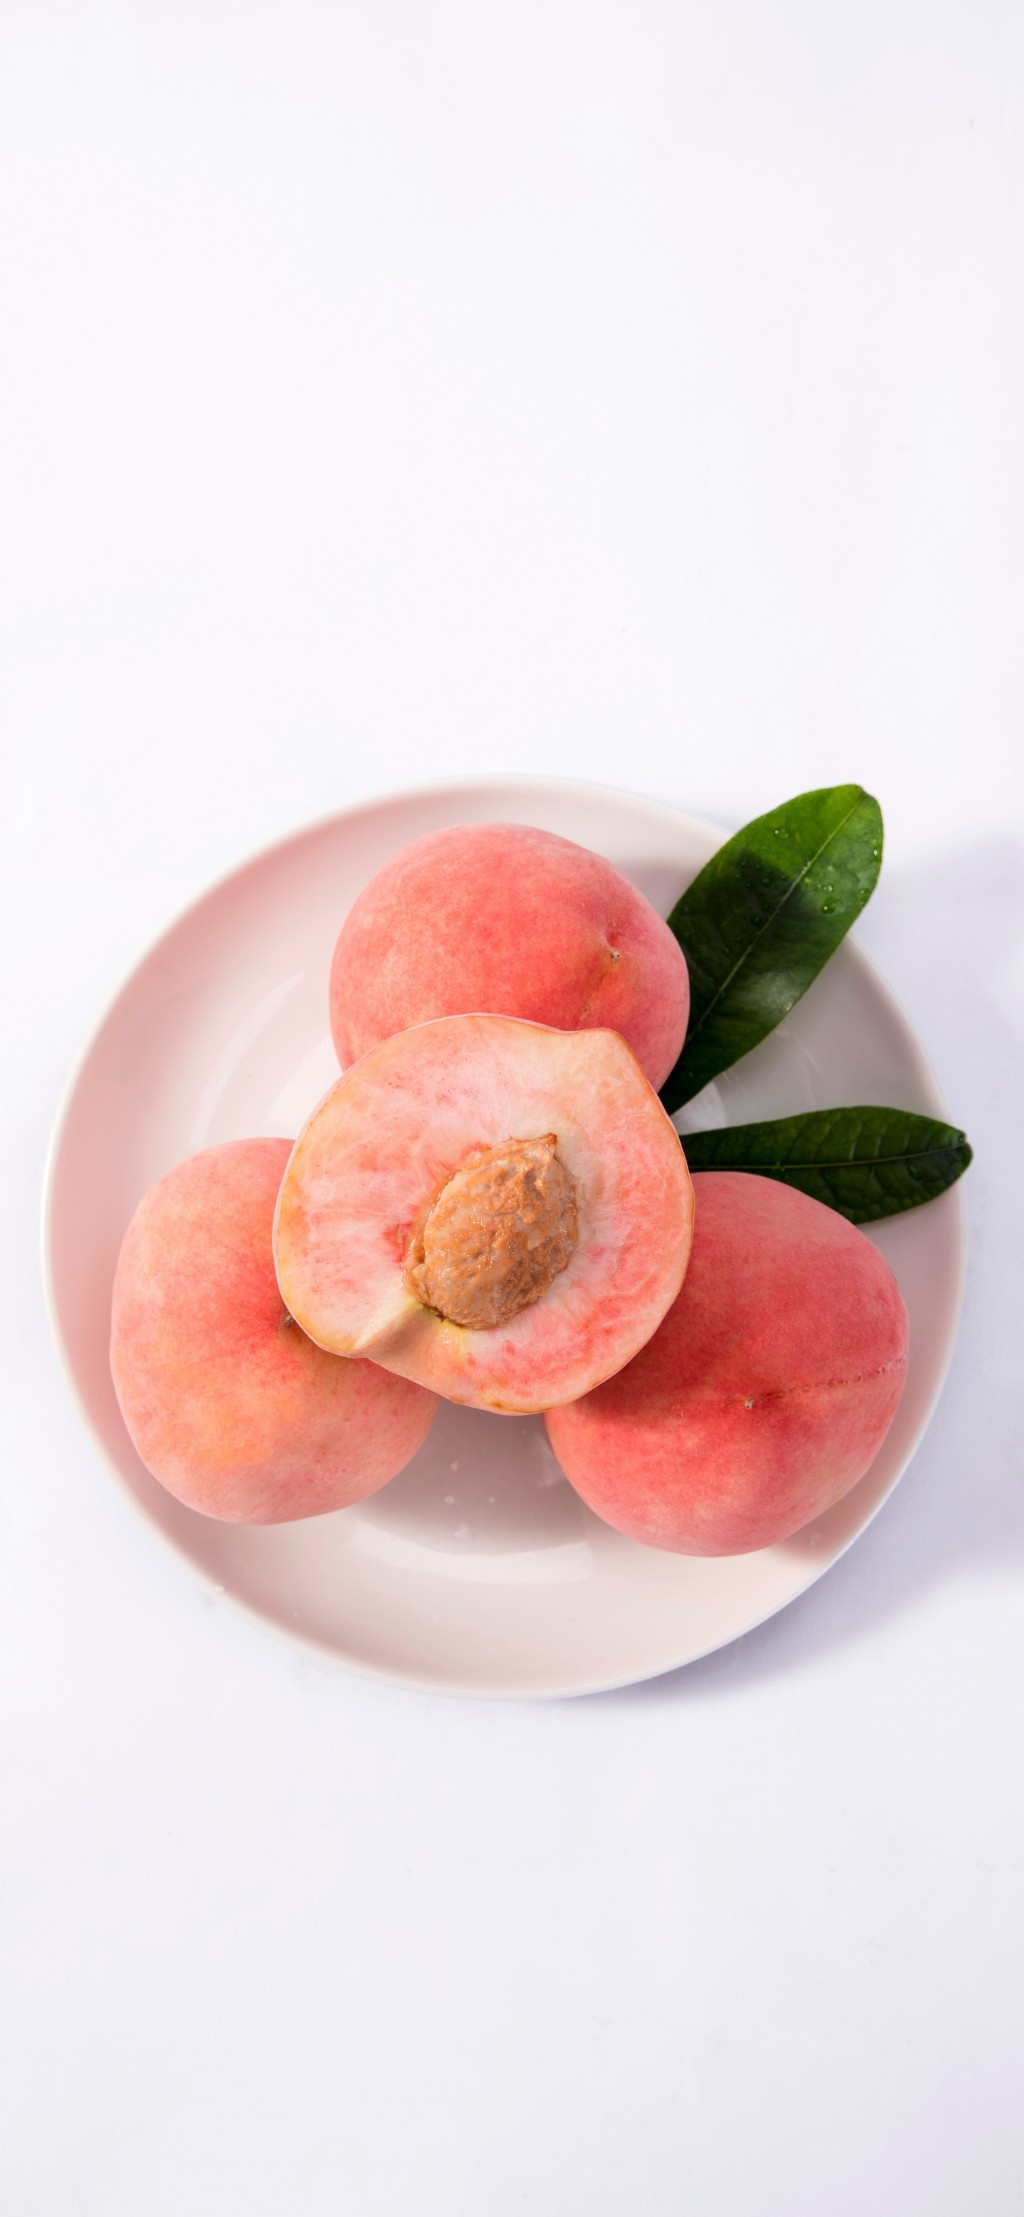 清新水果系列桃子手机壁纸